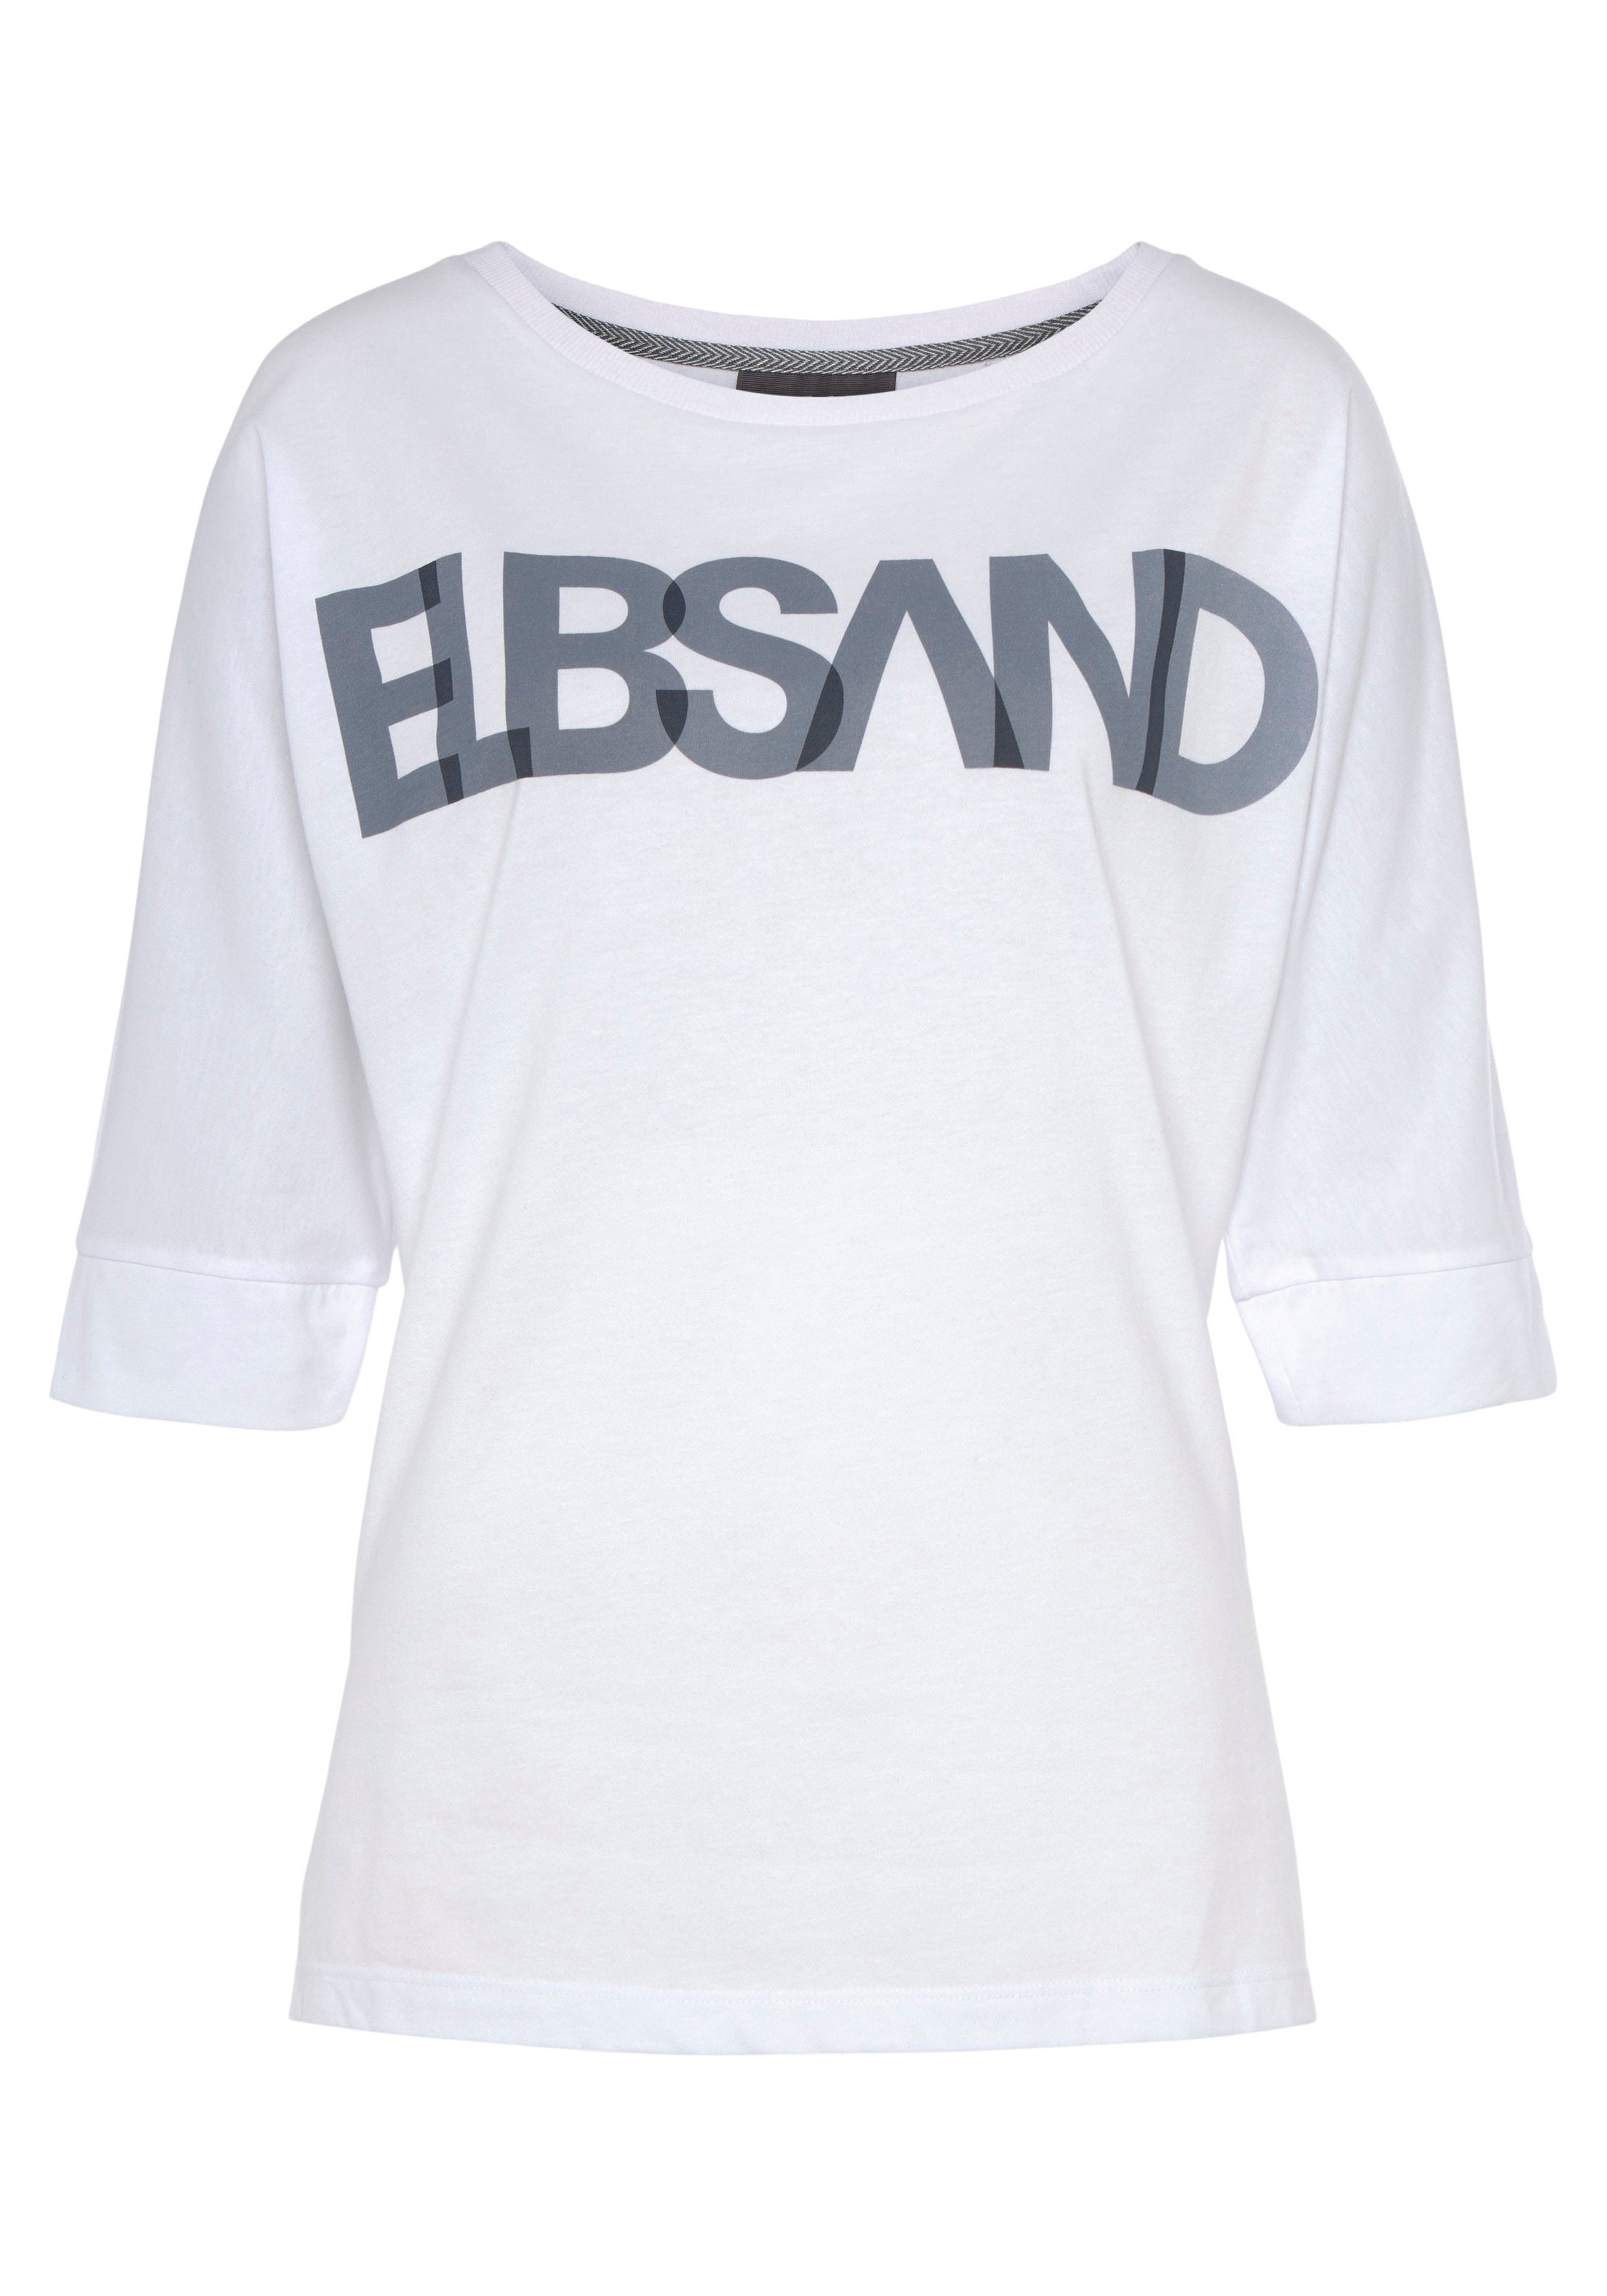 white Logodruck, Passform lockere Baumwoll-Mix, mit bright Elbsand 3/4-Arm-Shirt